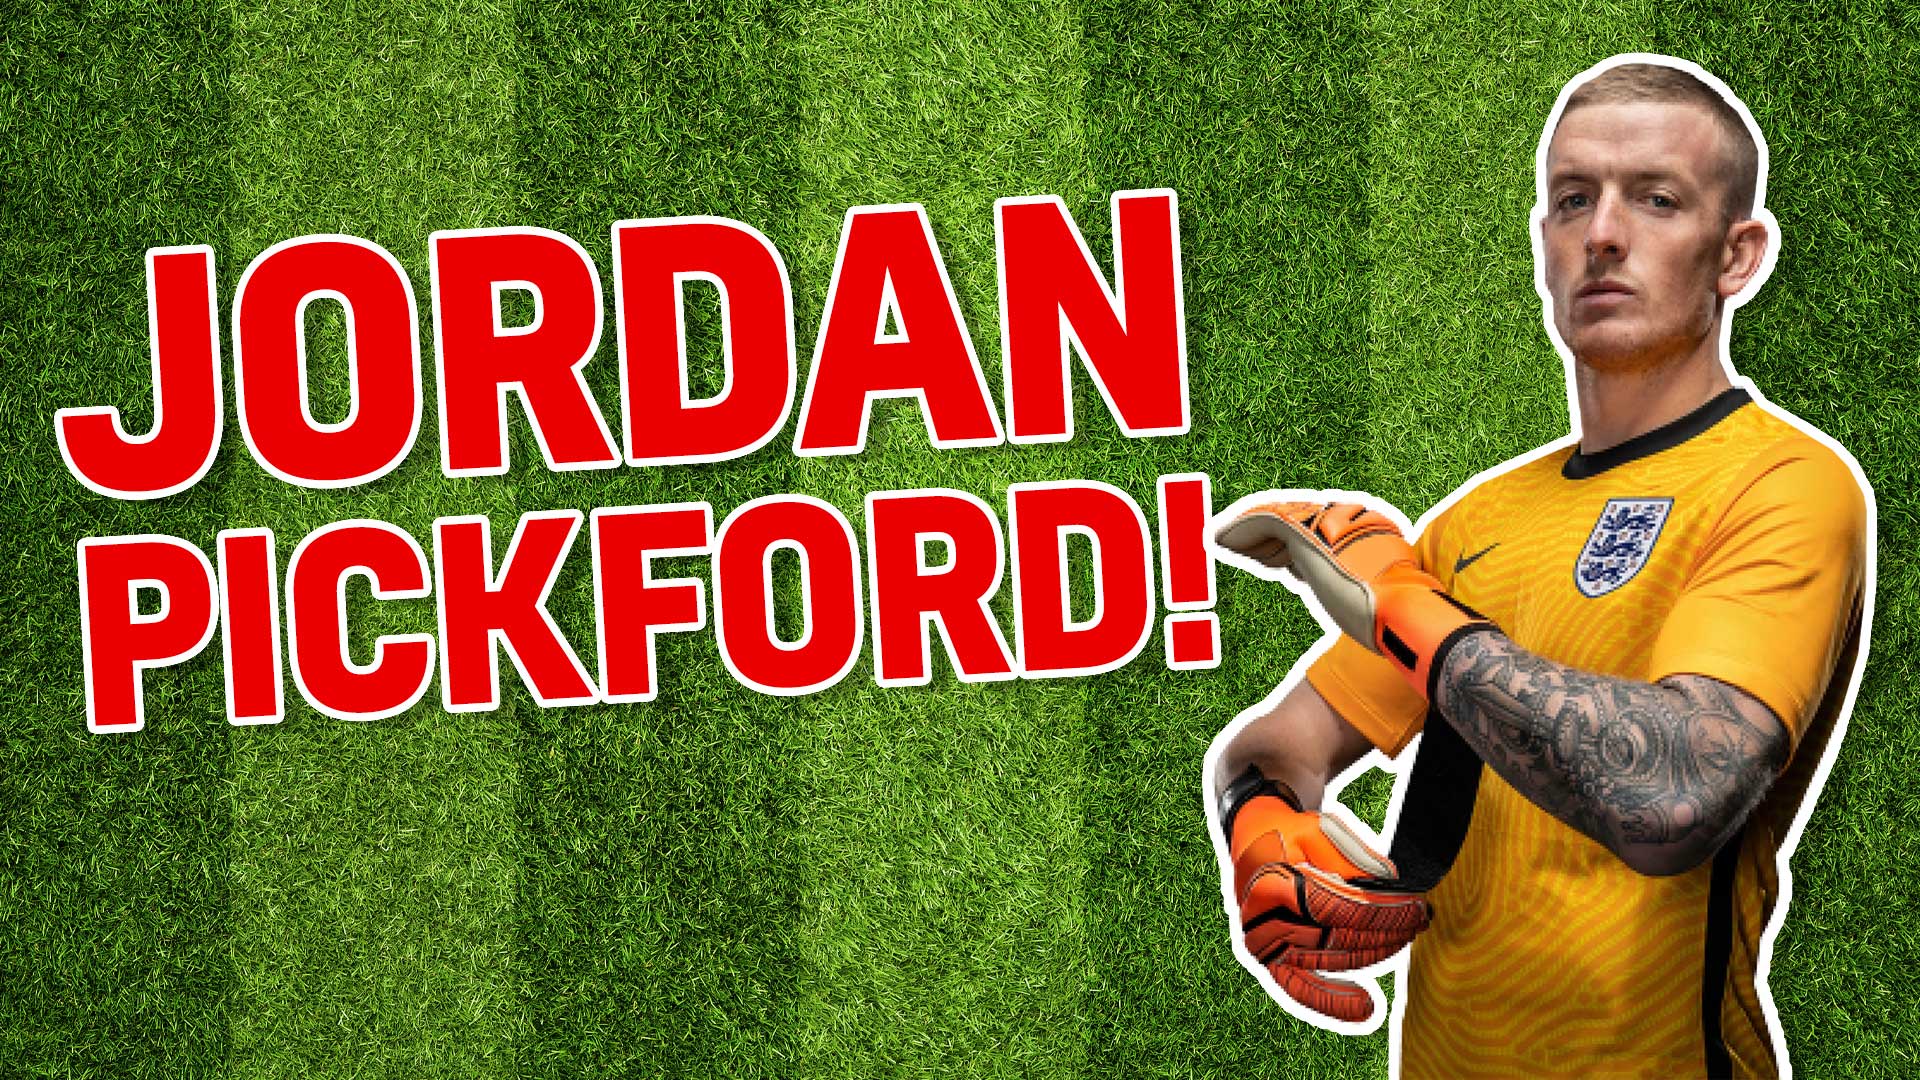 England footballer Jordan Pickford